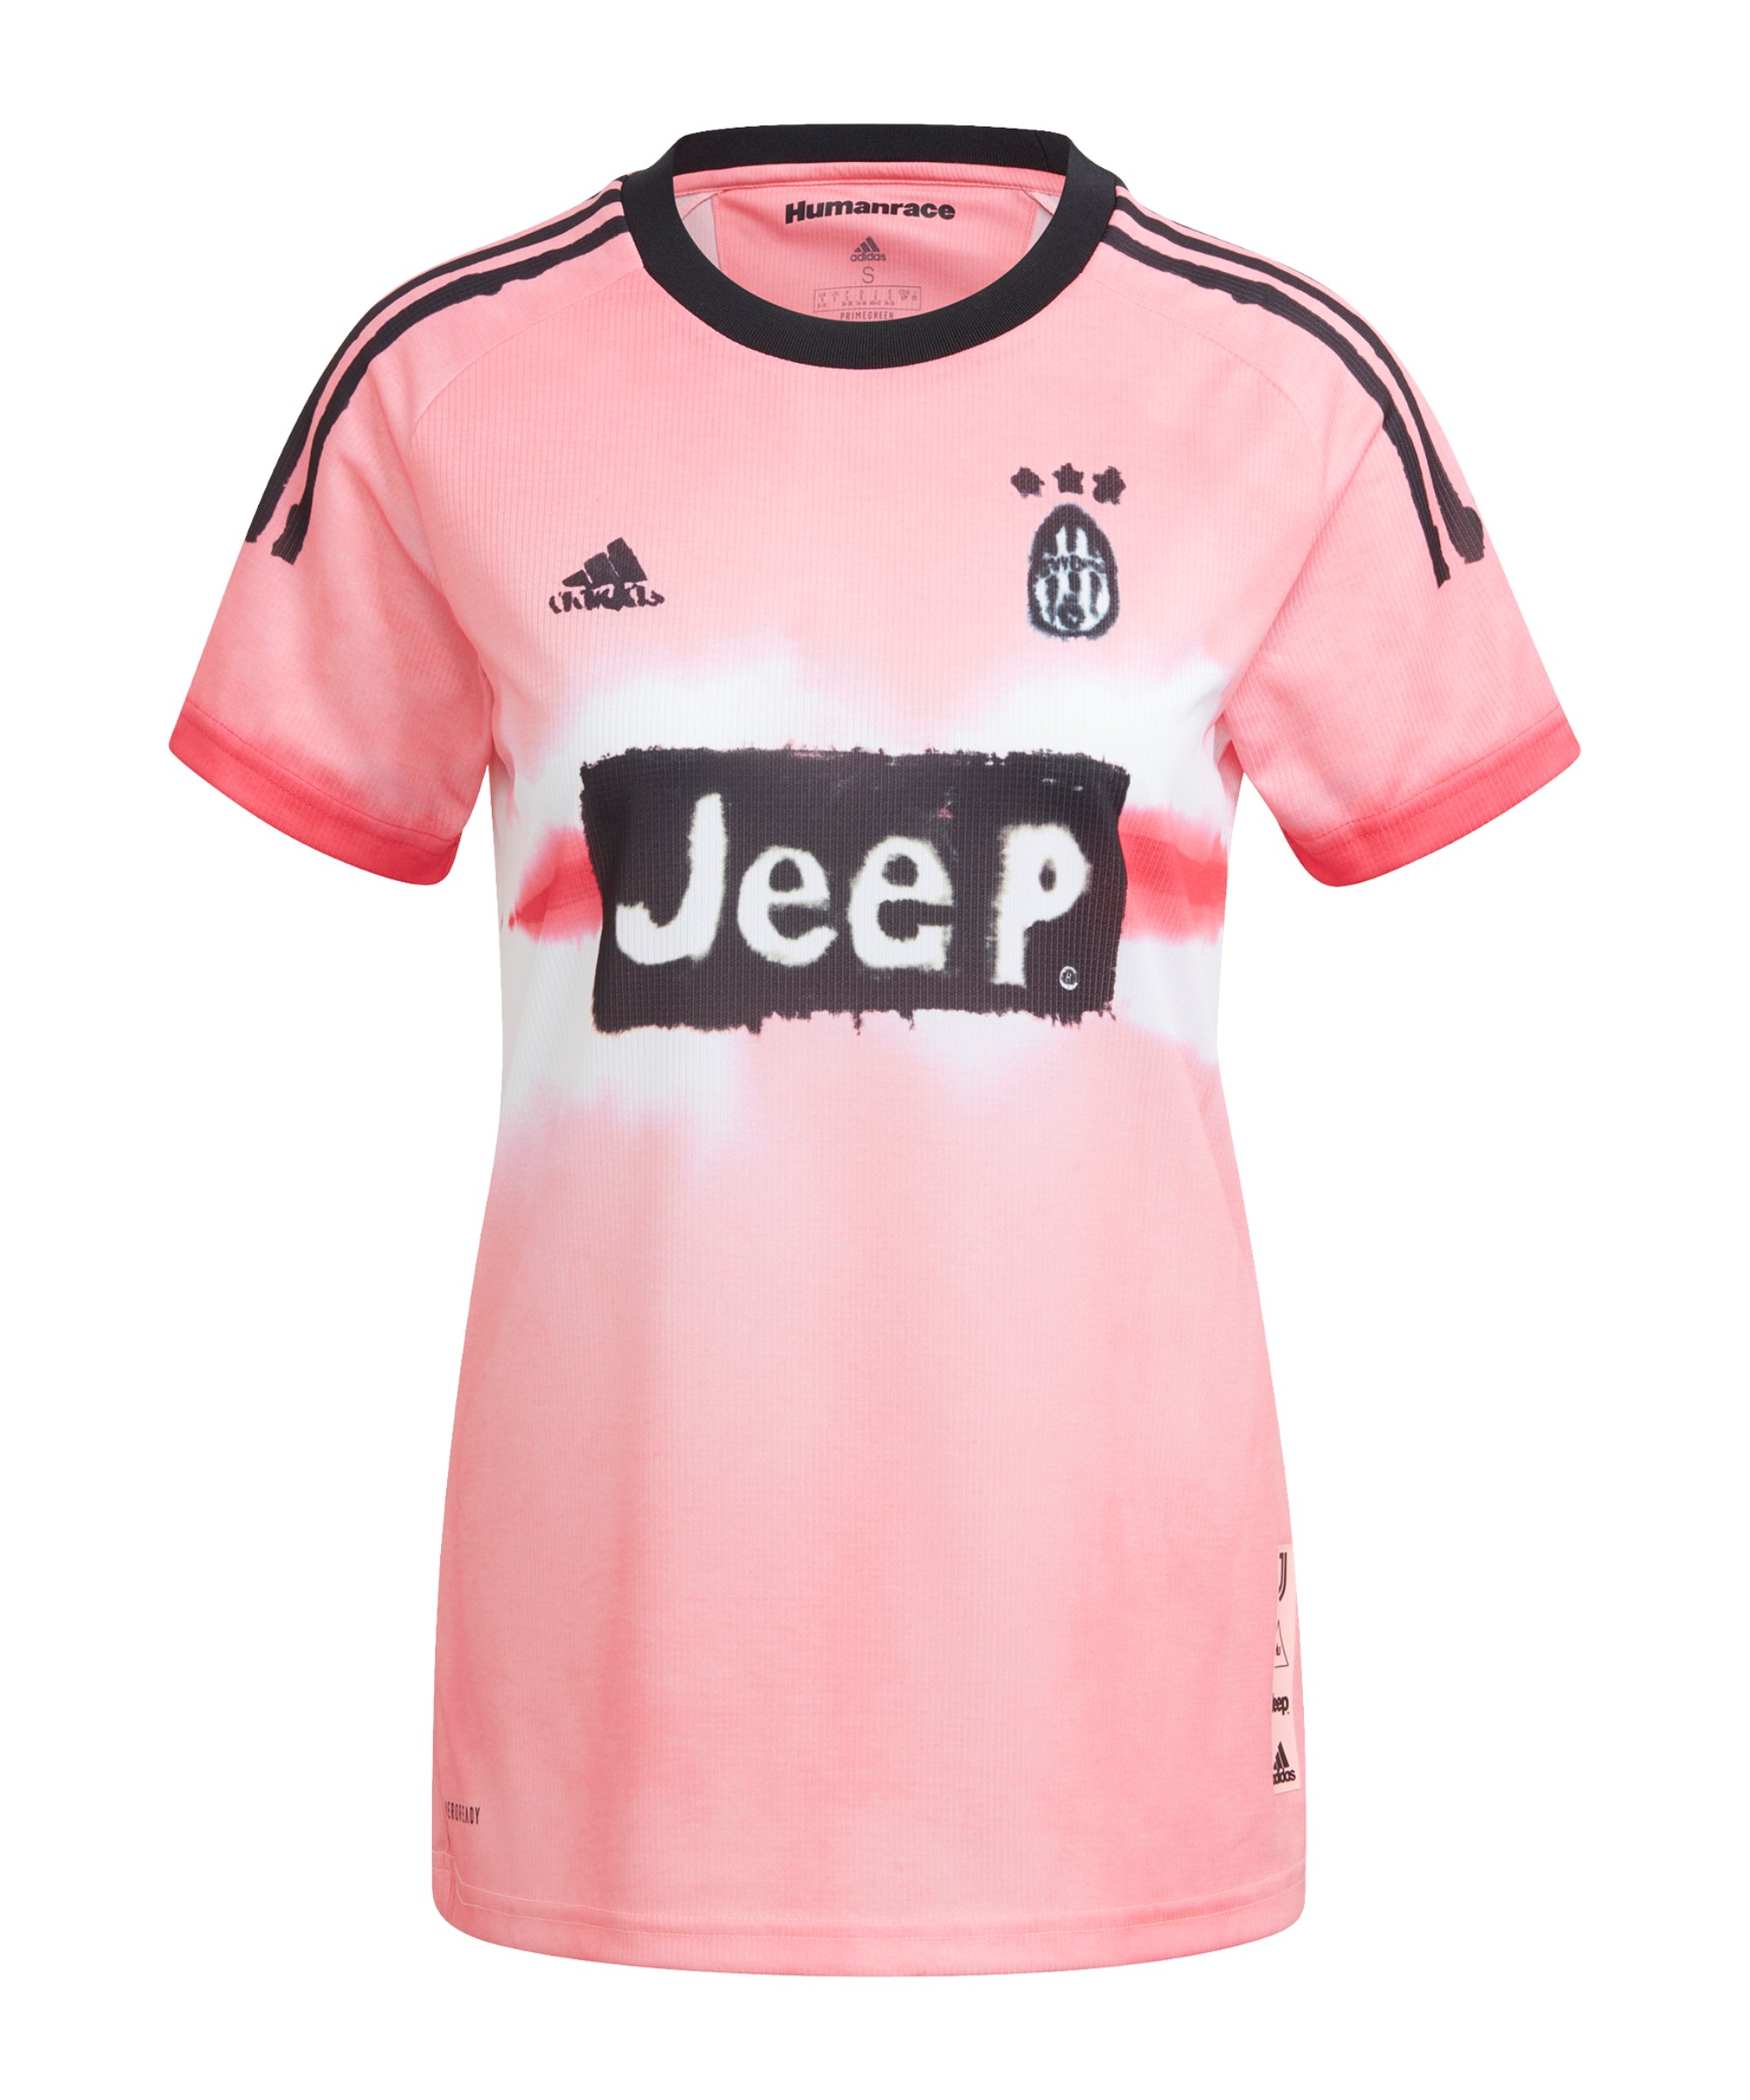 adidas Juventus Turin Human Race Trikot Damen Pink - pink